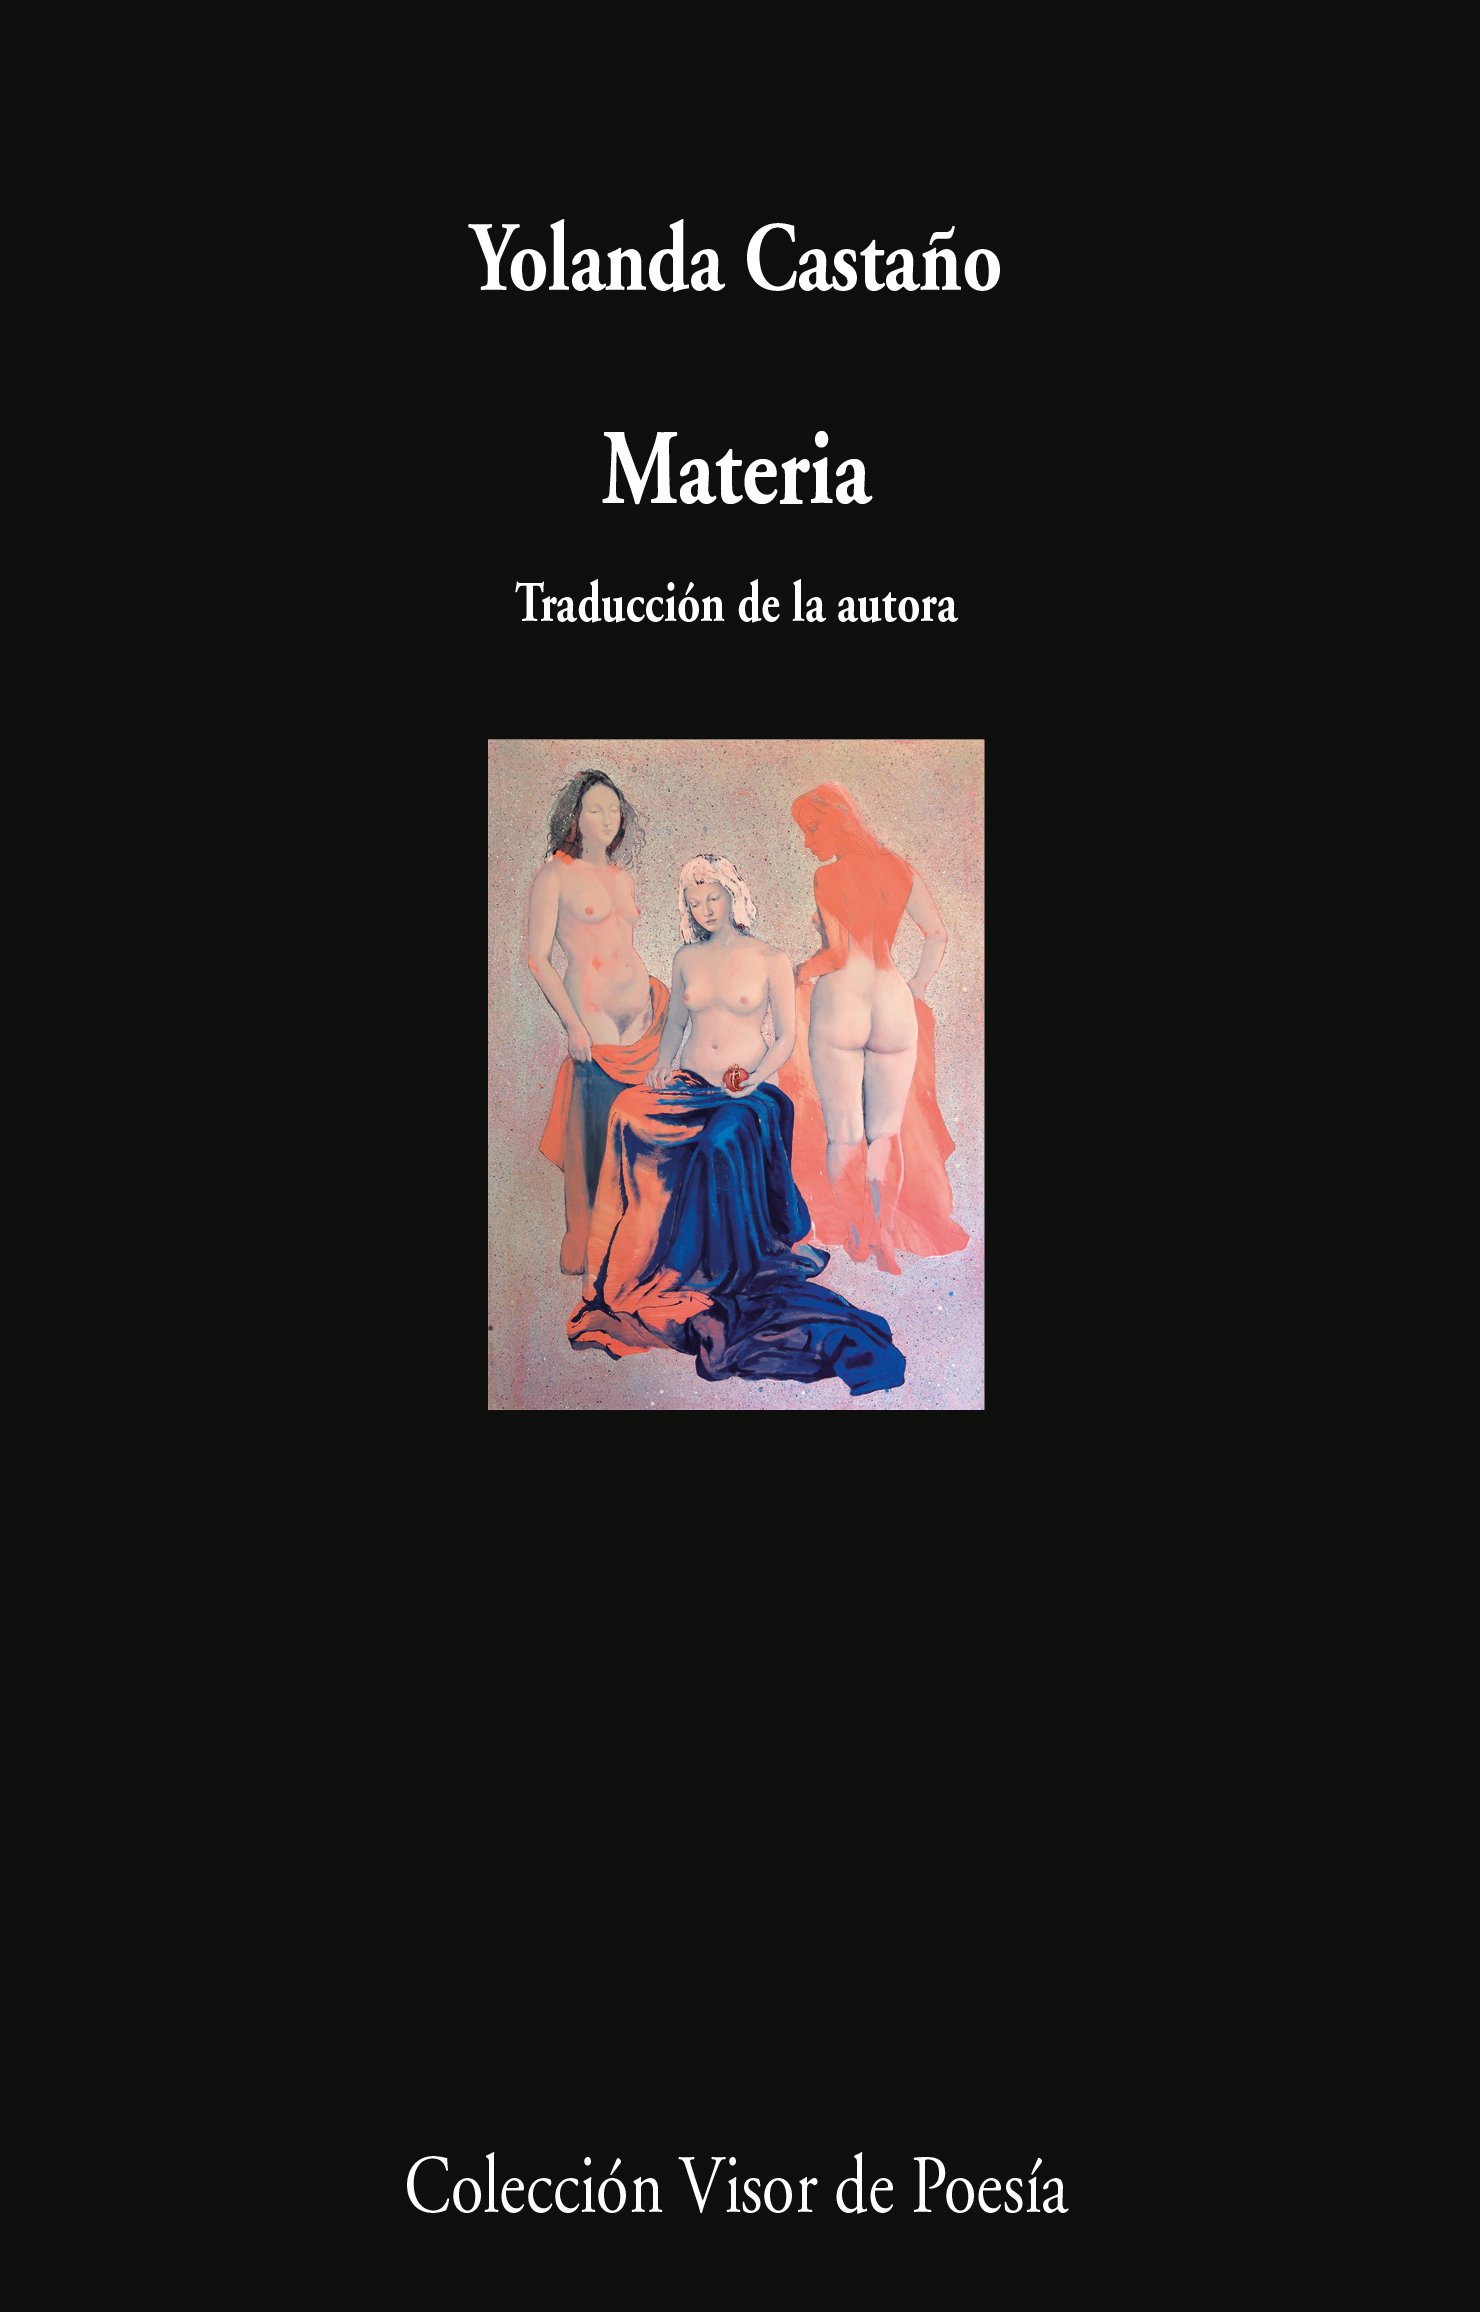 5 poemas de Materia, de Yolanda Castaño